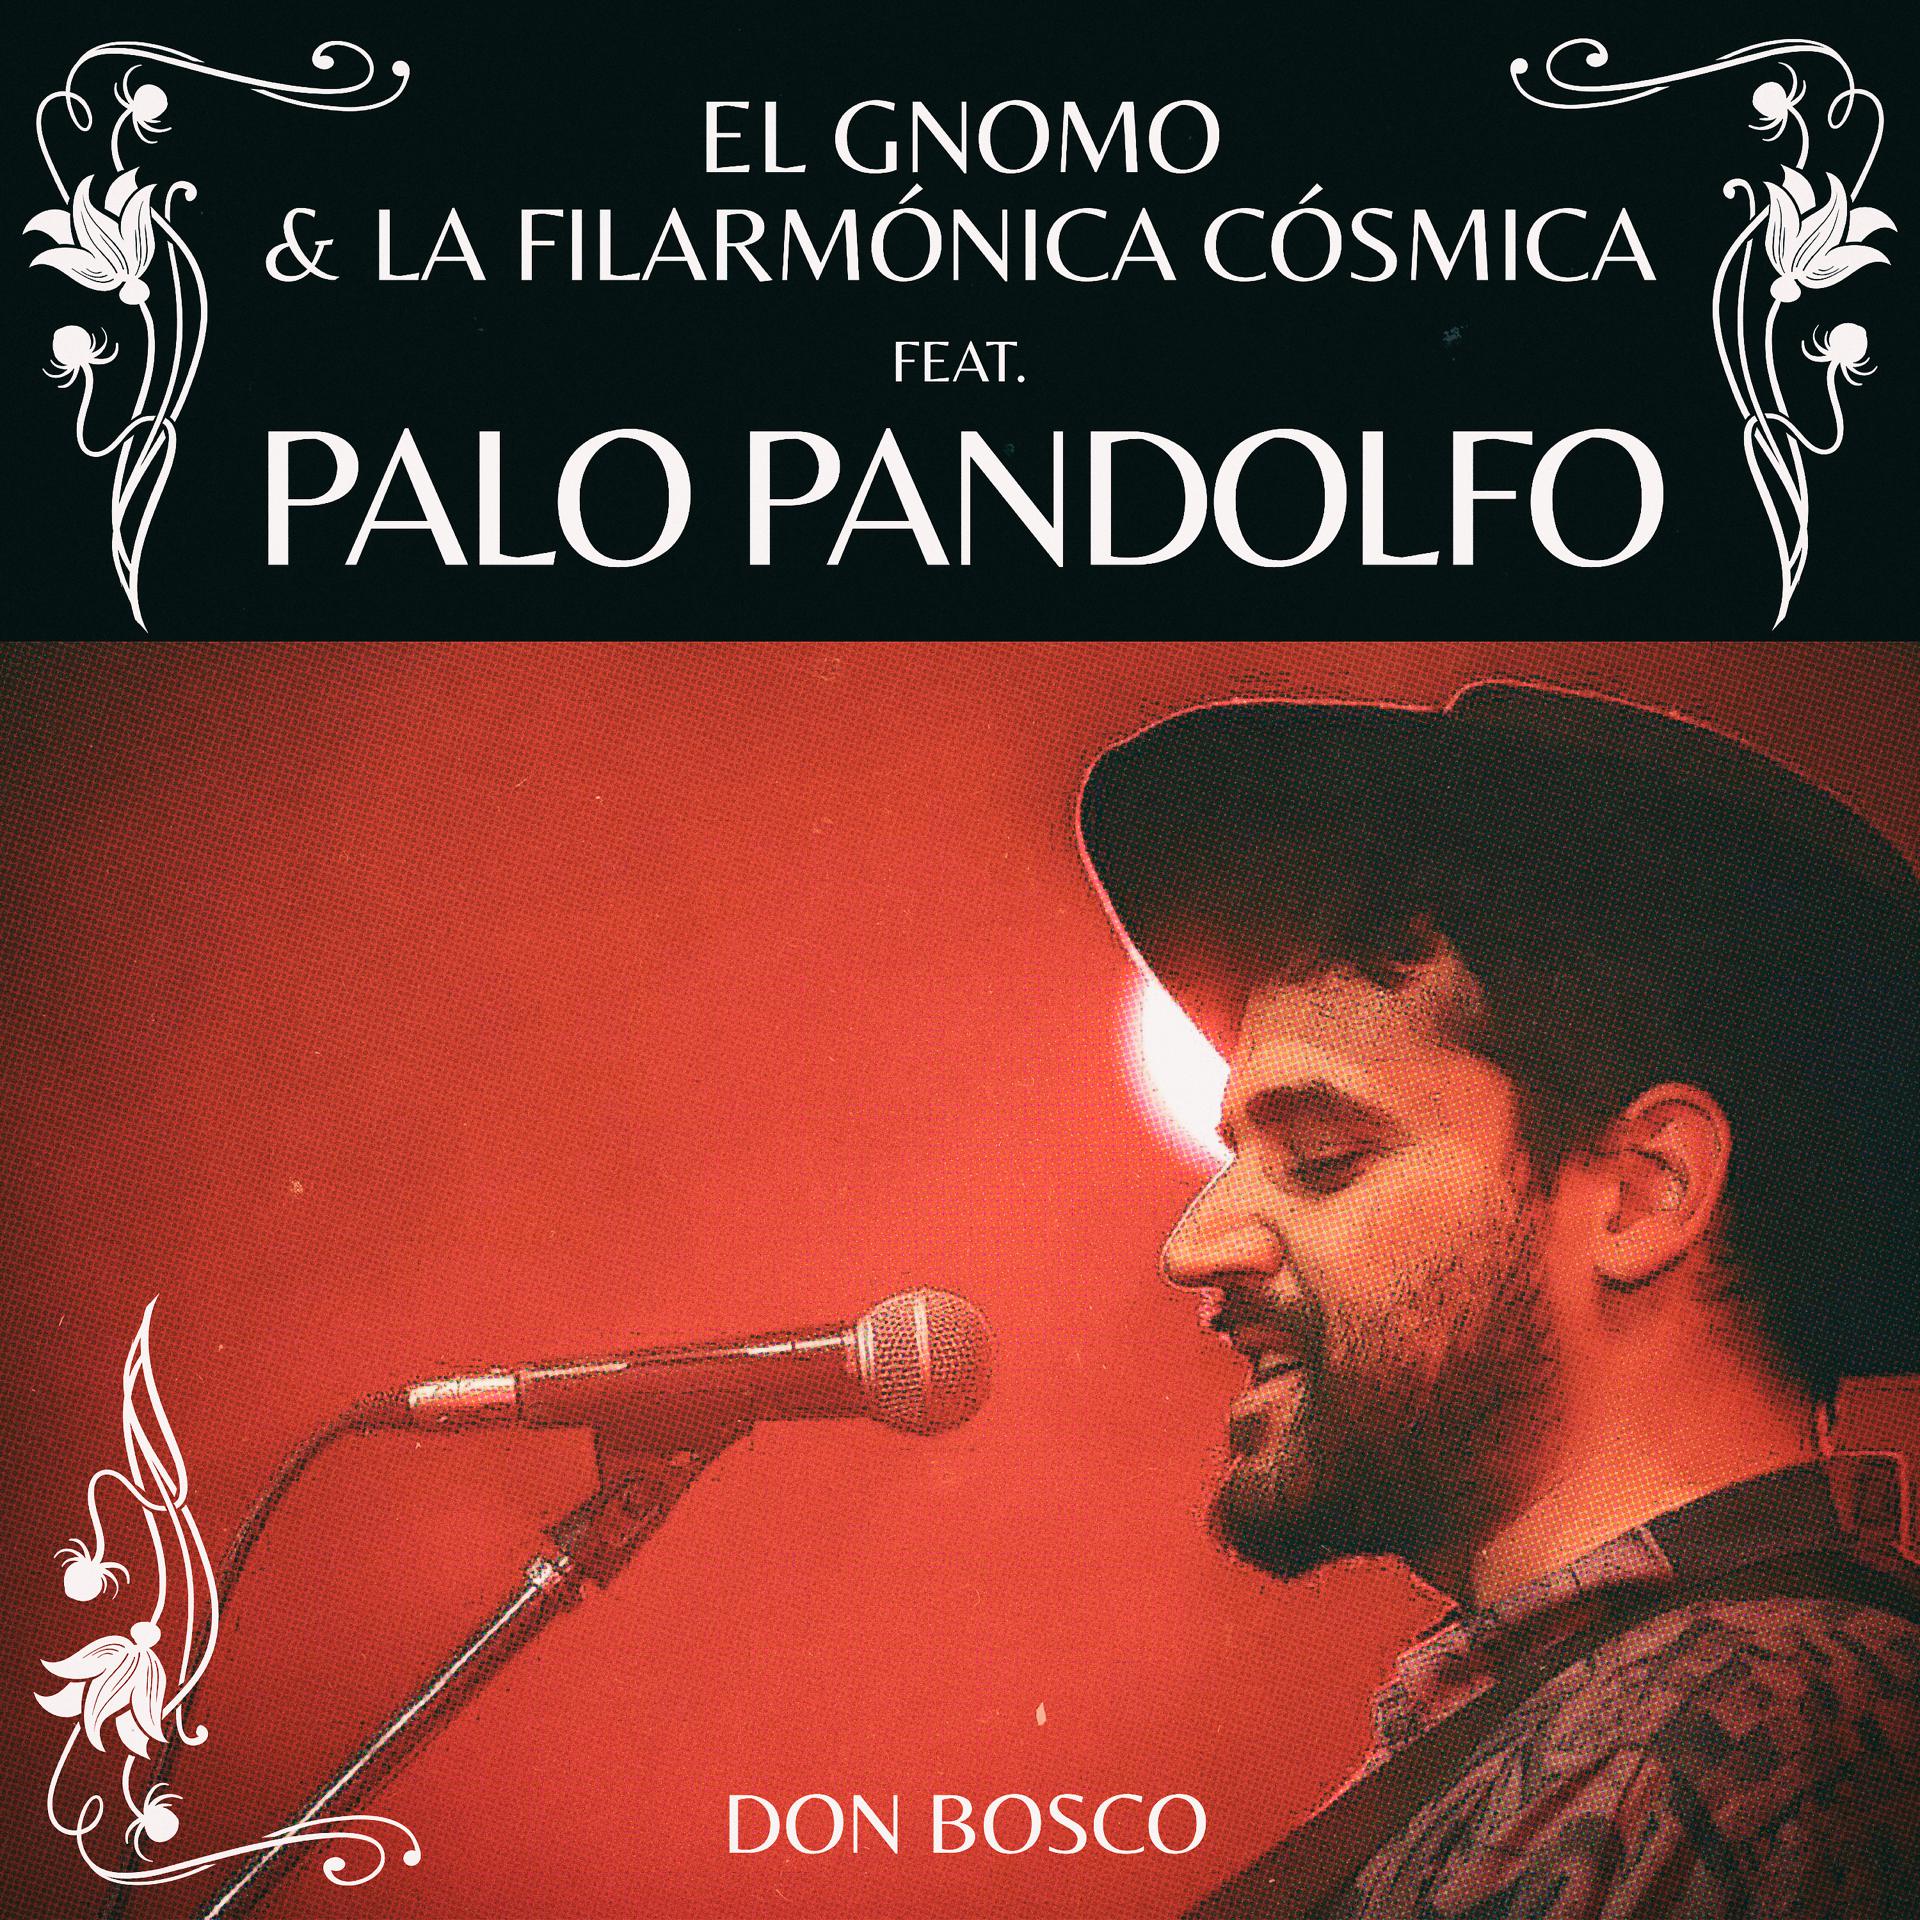 Постер к треку Palo Pandolfo, El Gnomo & La Filarmónica Cósmica - Don Bosco